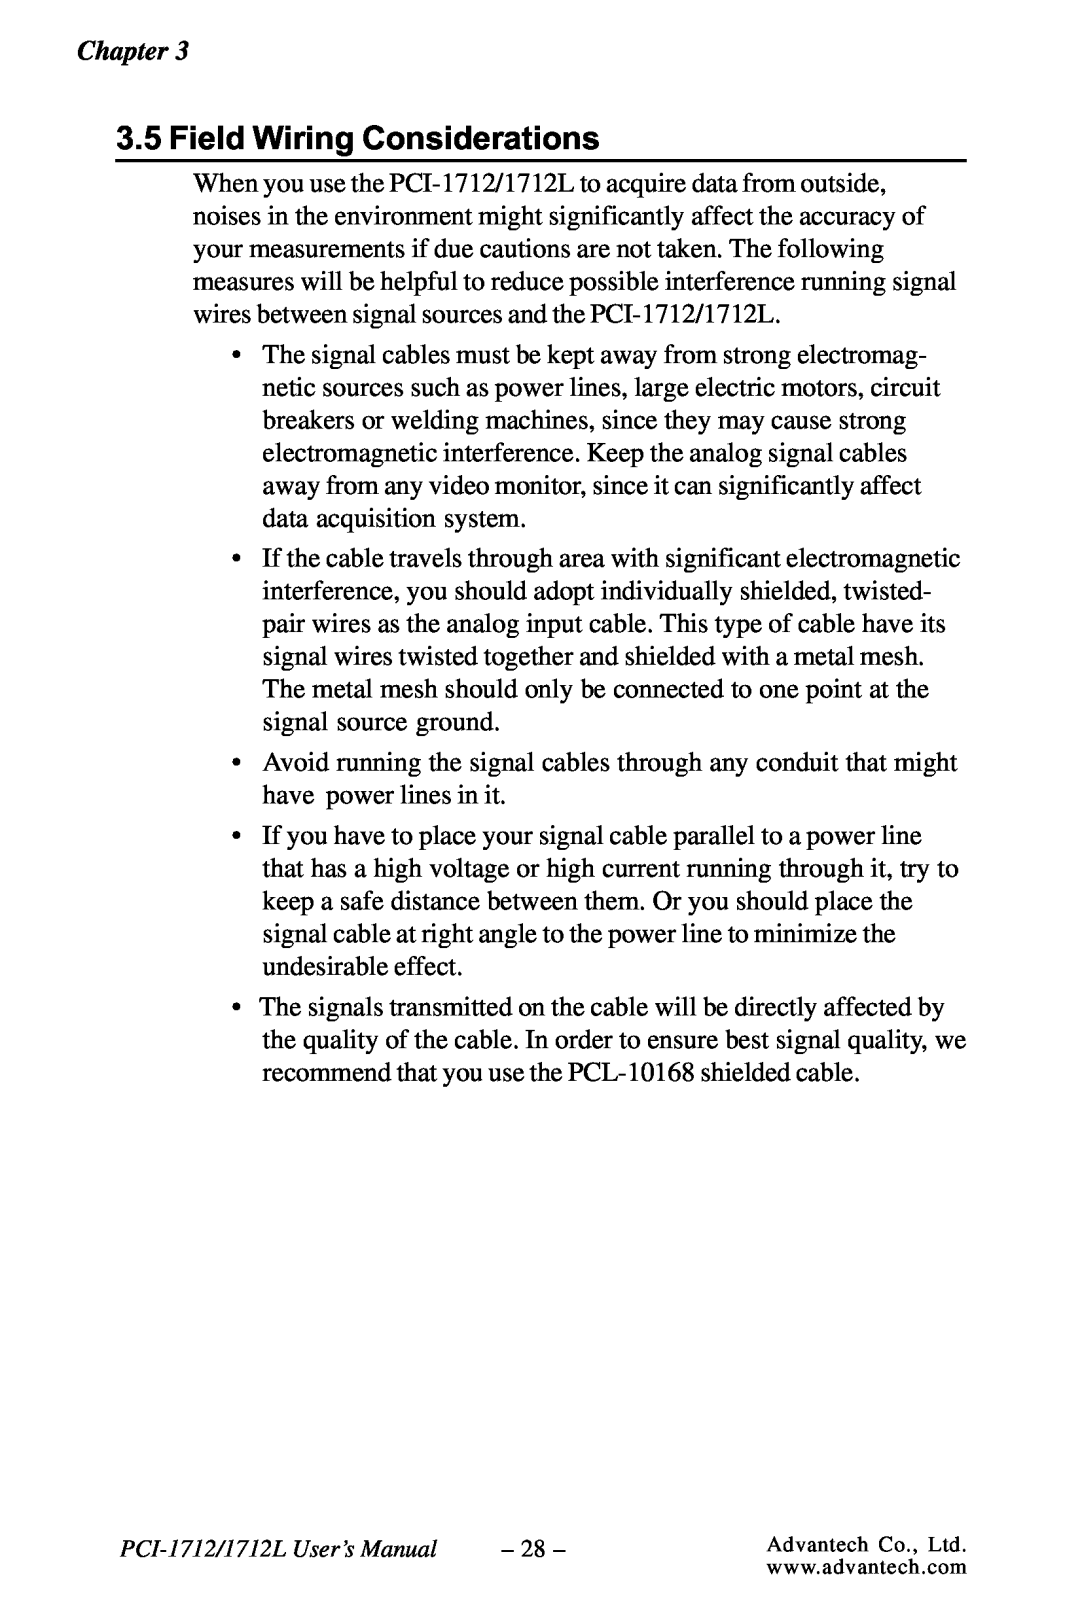 Konica Minolta PCI-1712L user manual Field Wiring Considerations 